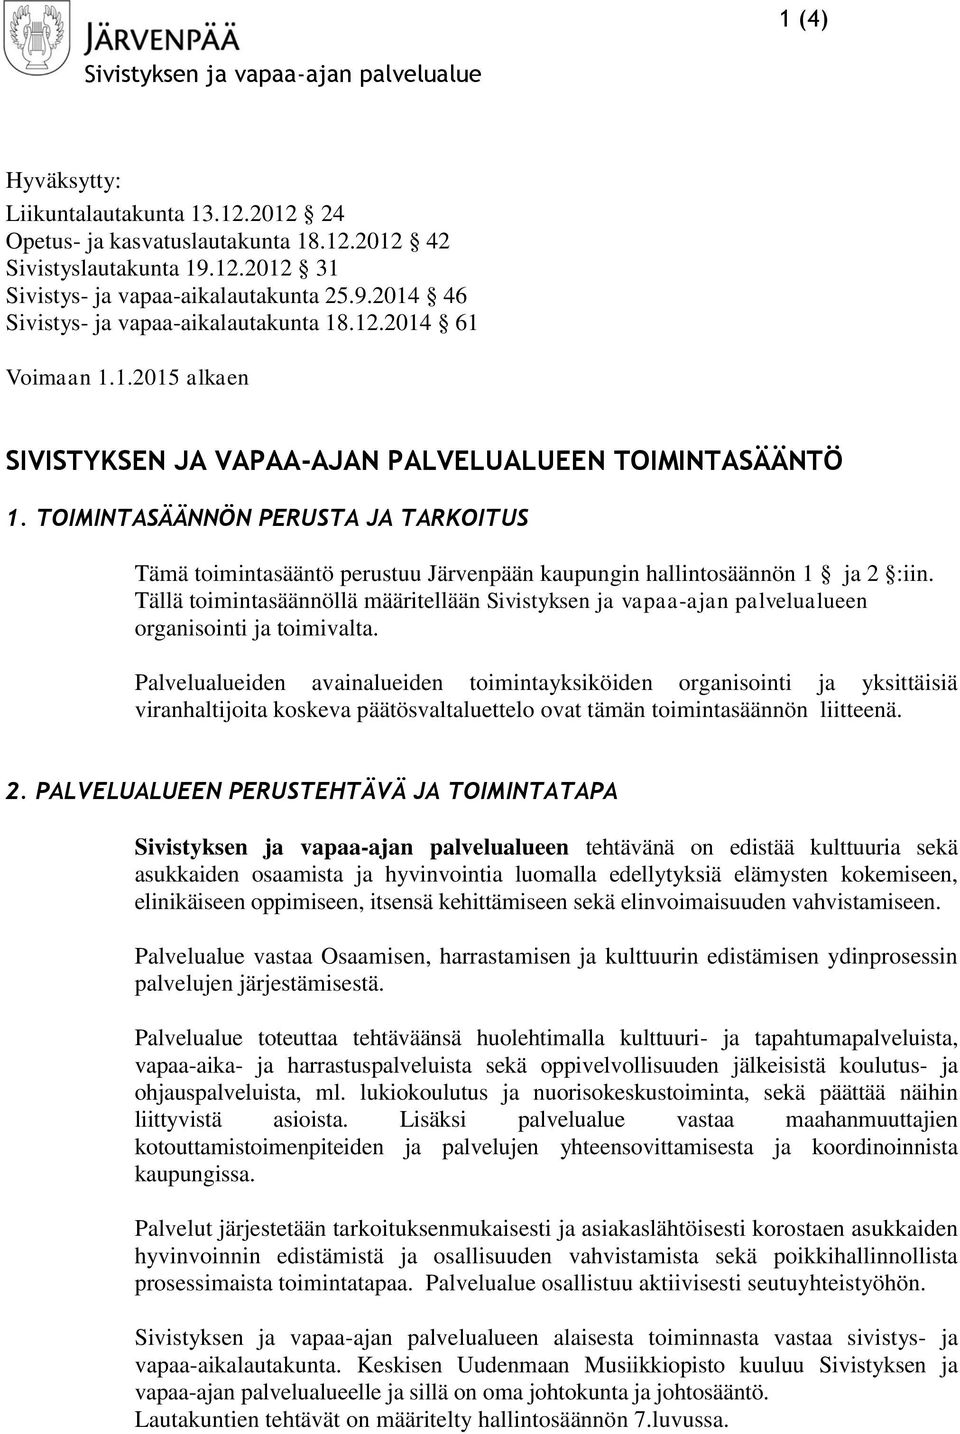 TOIMINTASÄÄNNÖN PERUSTA JA TARKOITUS Tämä toimintasääntö perustuu Järvenpään kaupungin hallintosäännön 1 ja 2 :iin. Tällä toimintasäännöllä määritellään en organisointi ja toimivalta.